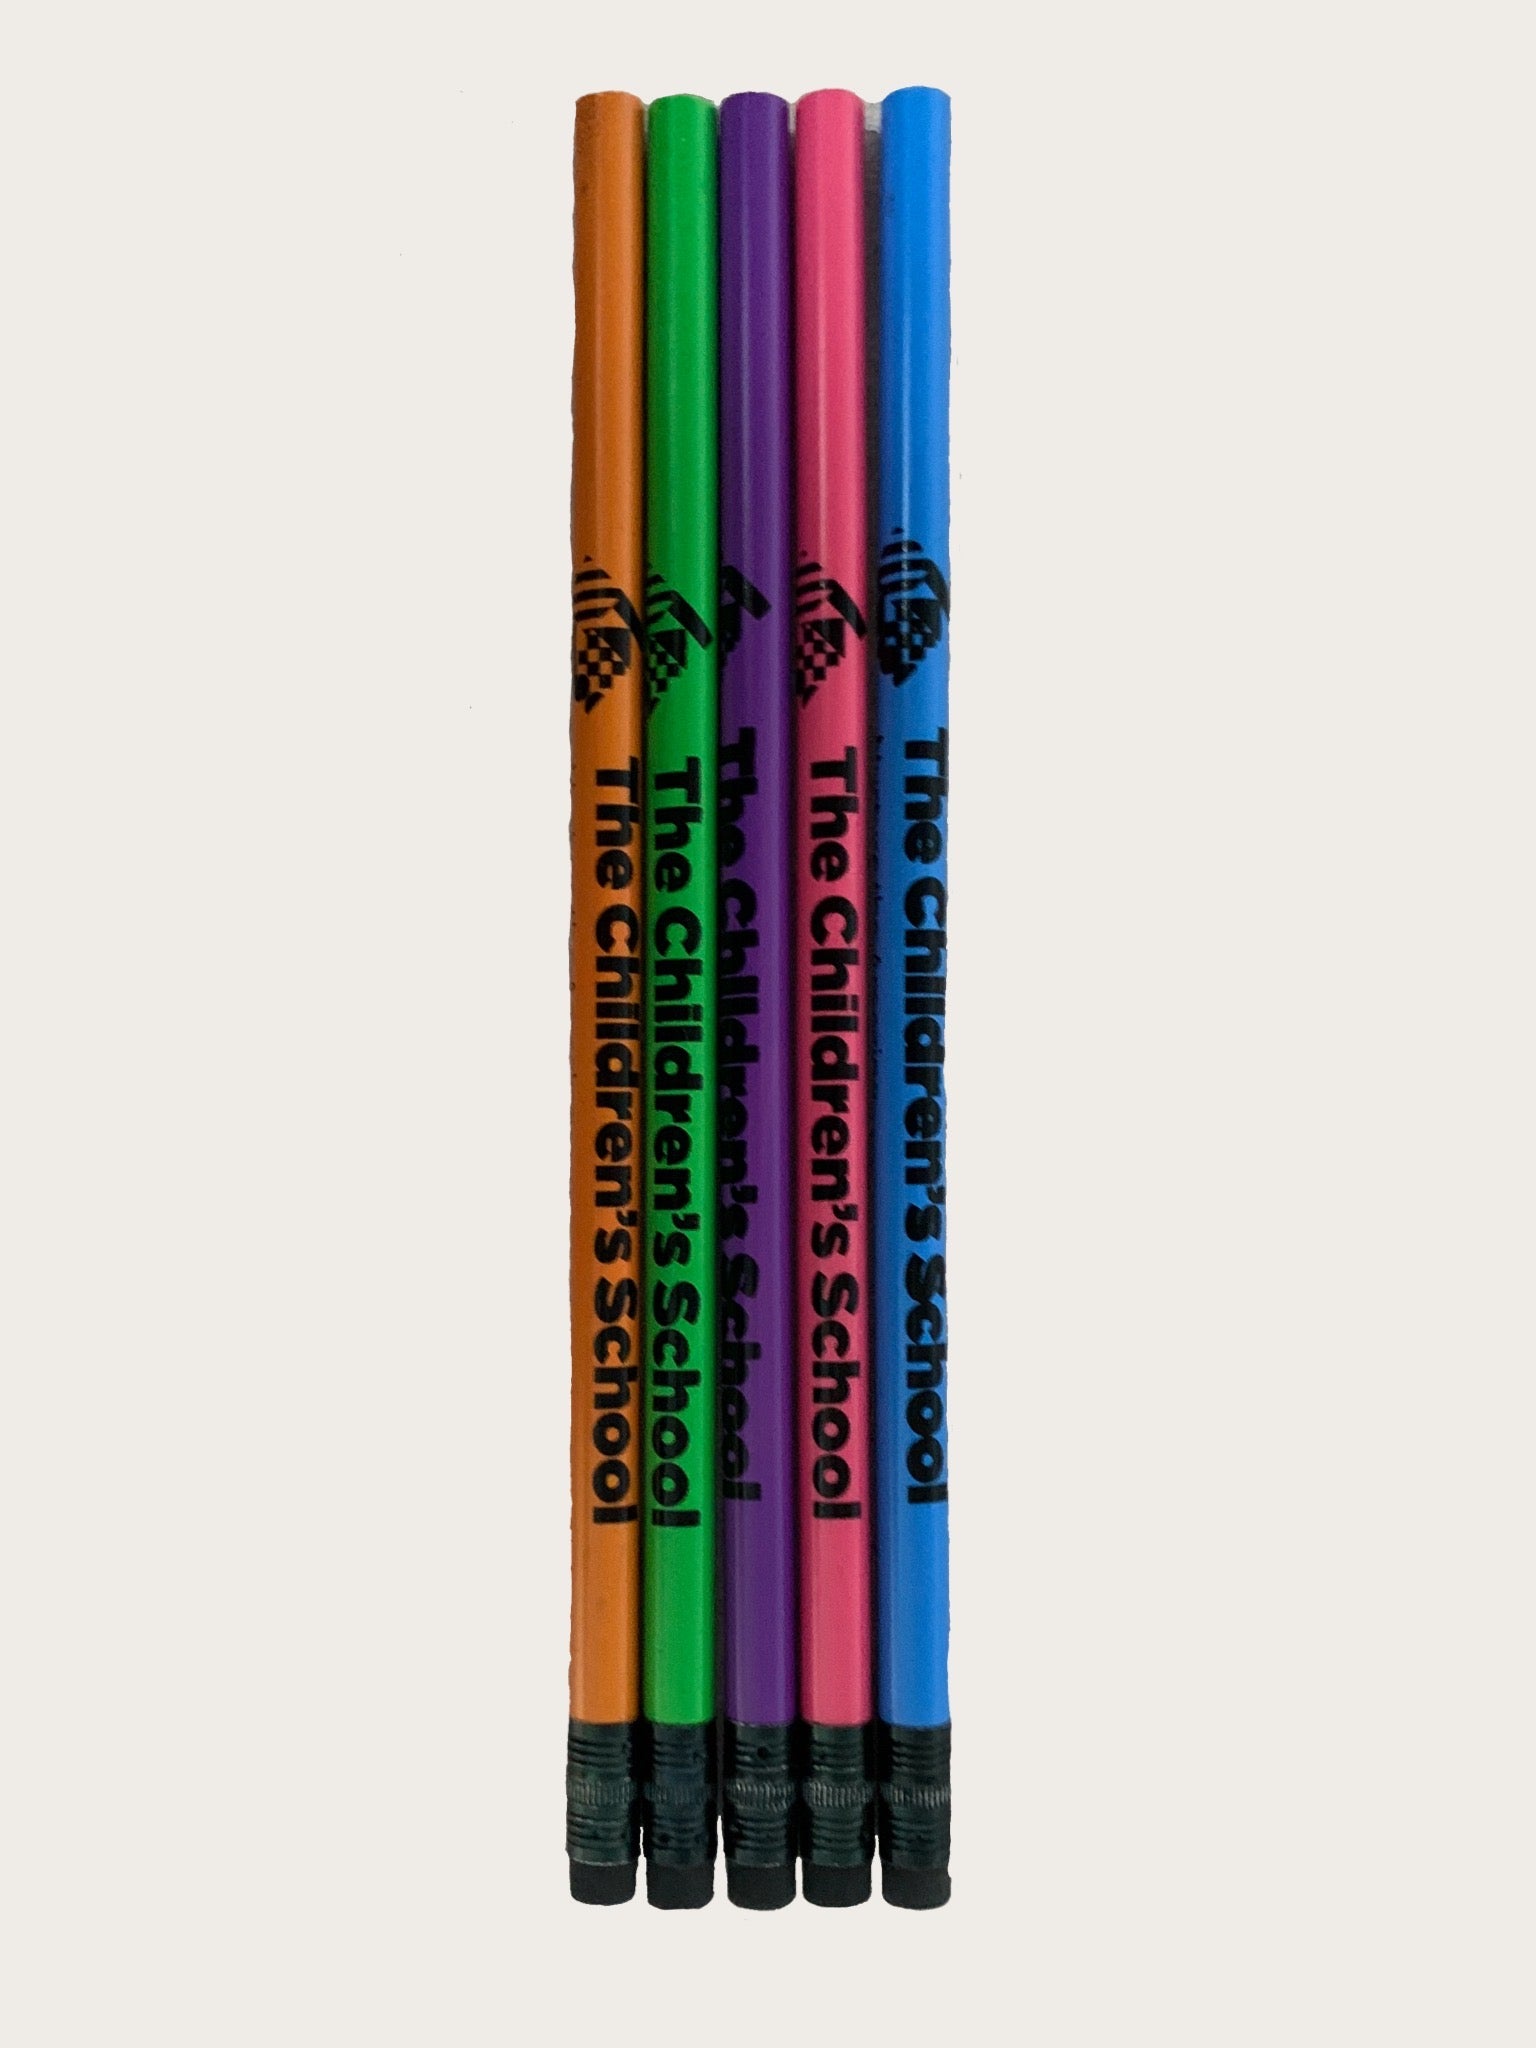 Heat activated mood pencils. : r/nostalgia